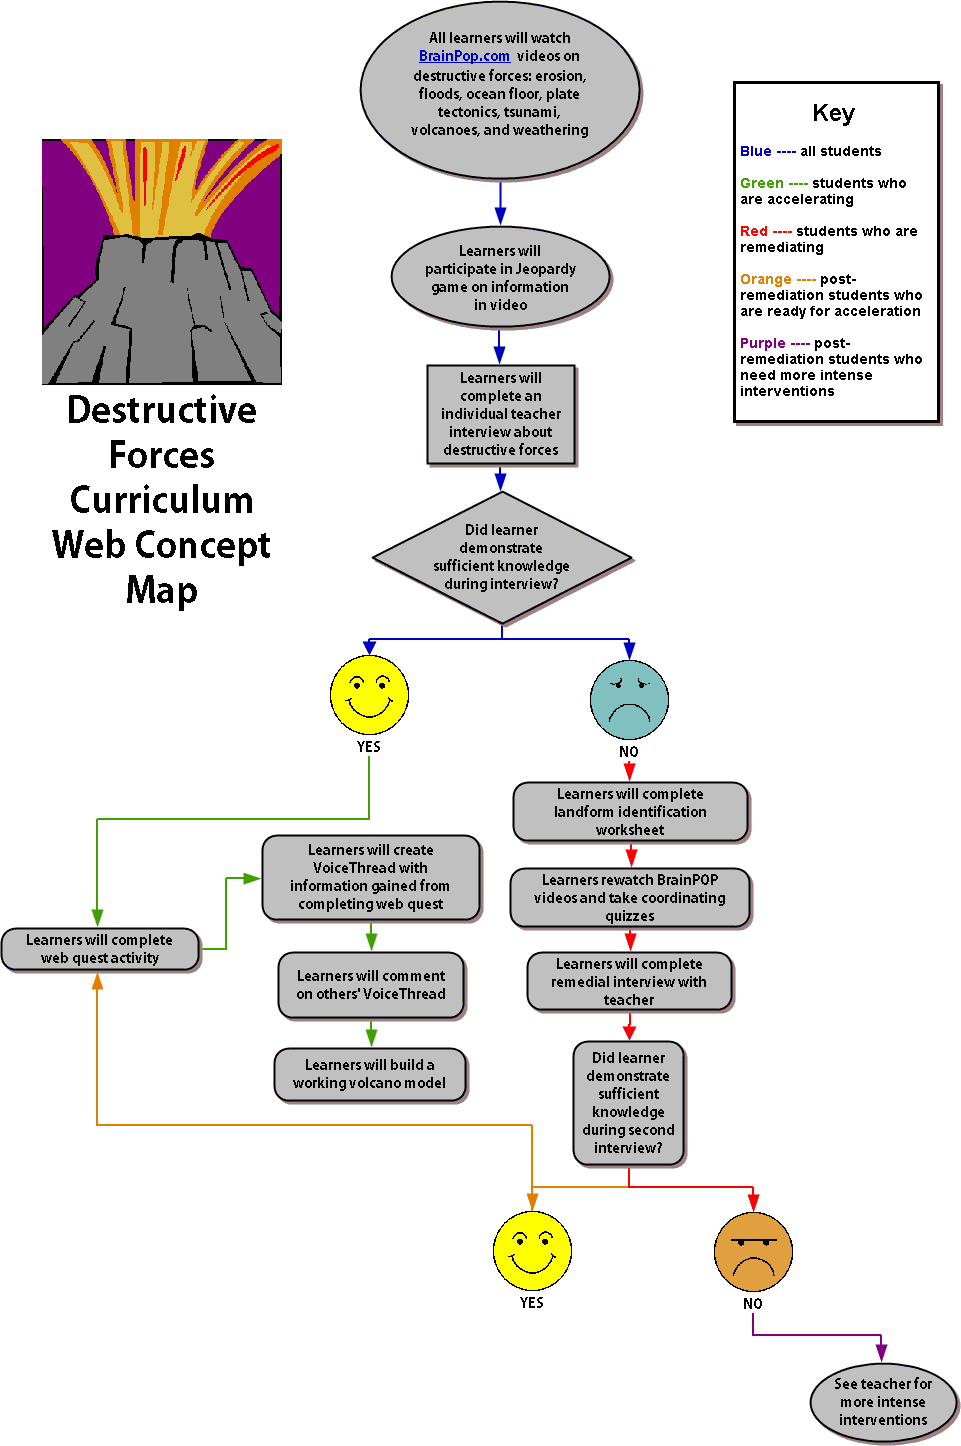 Picture of the Destructive Forces Concept Map